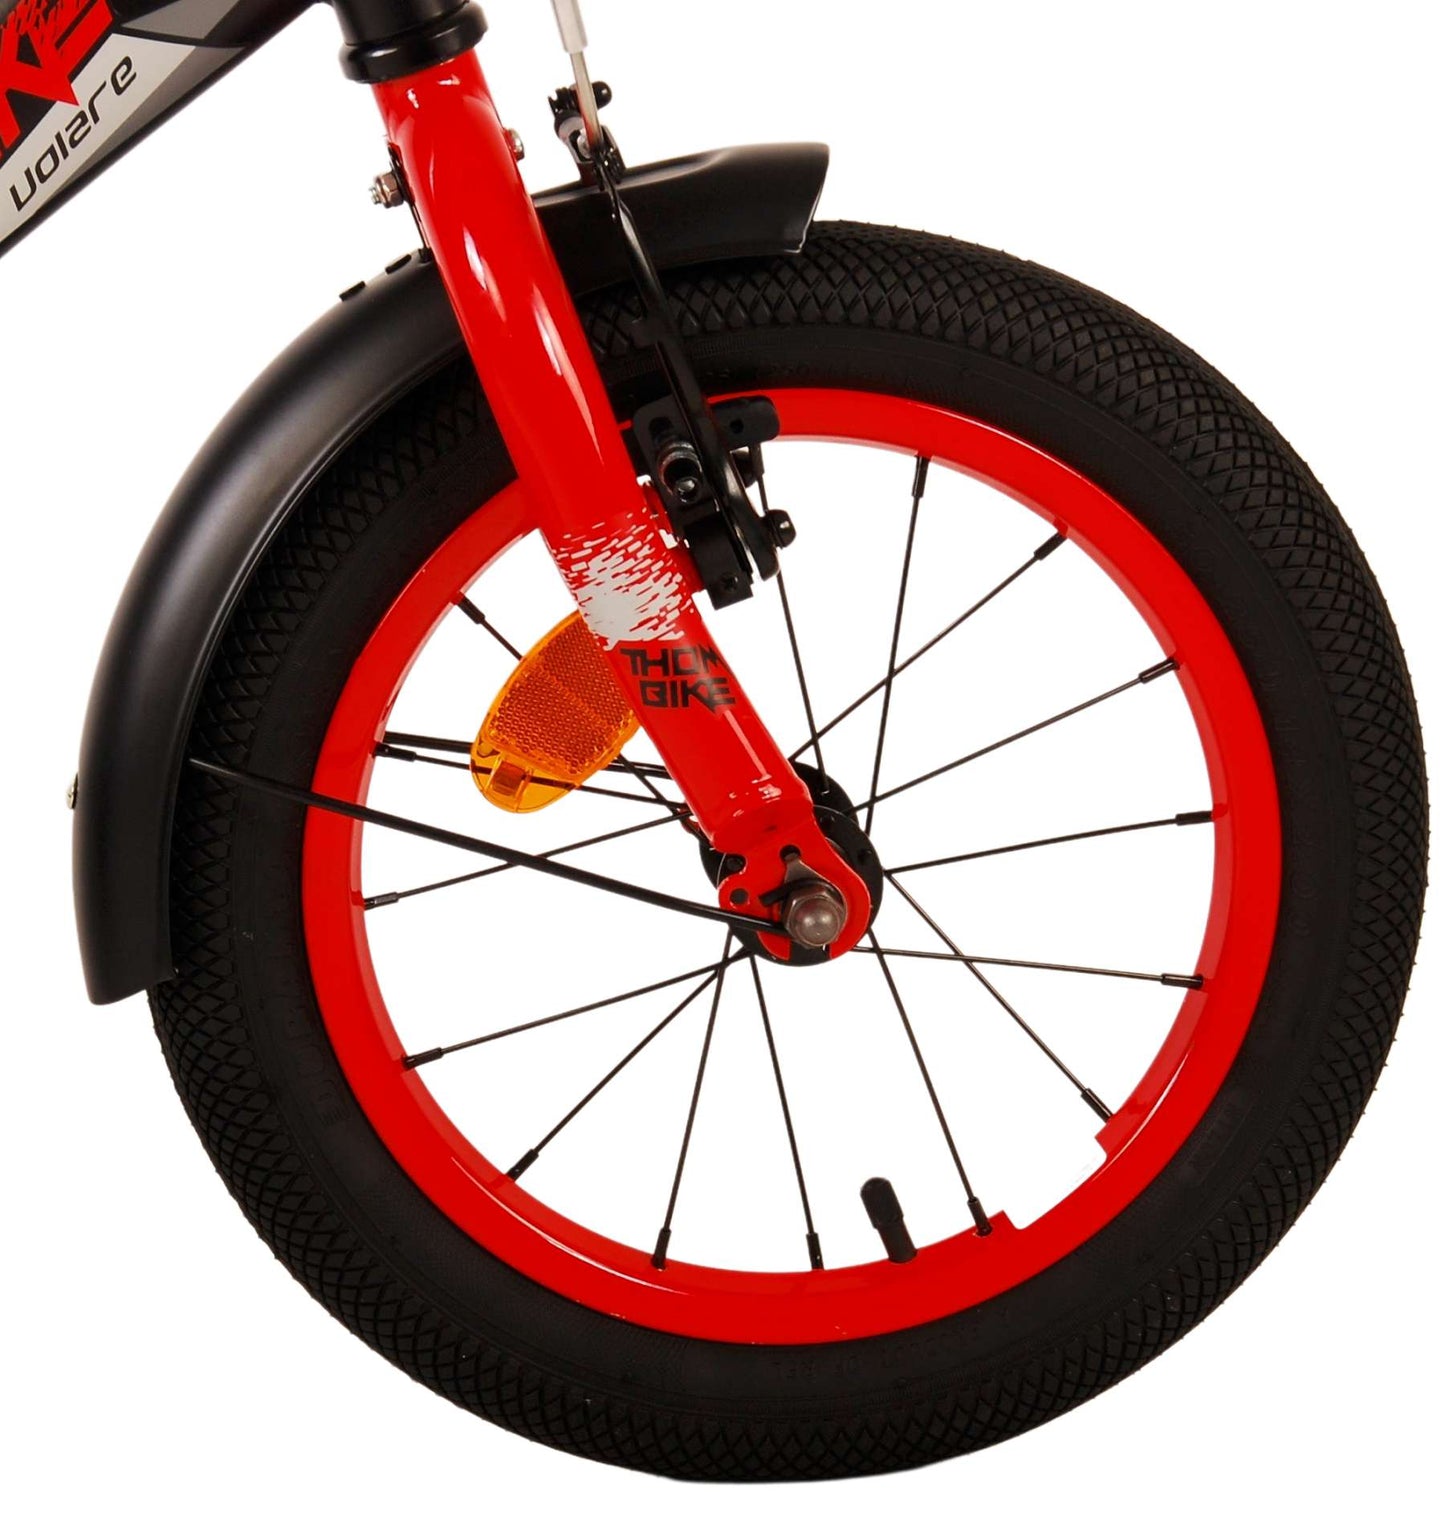 Bike per bambini Volare Thbike - Boys - 14 pollici - rosso nero - freni a due mani